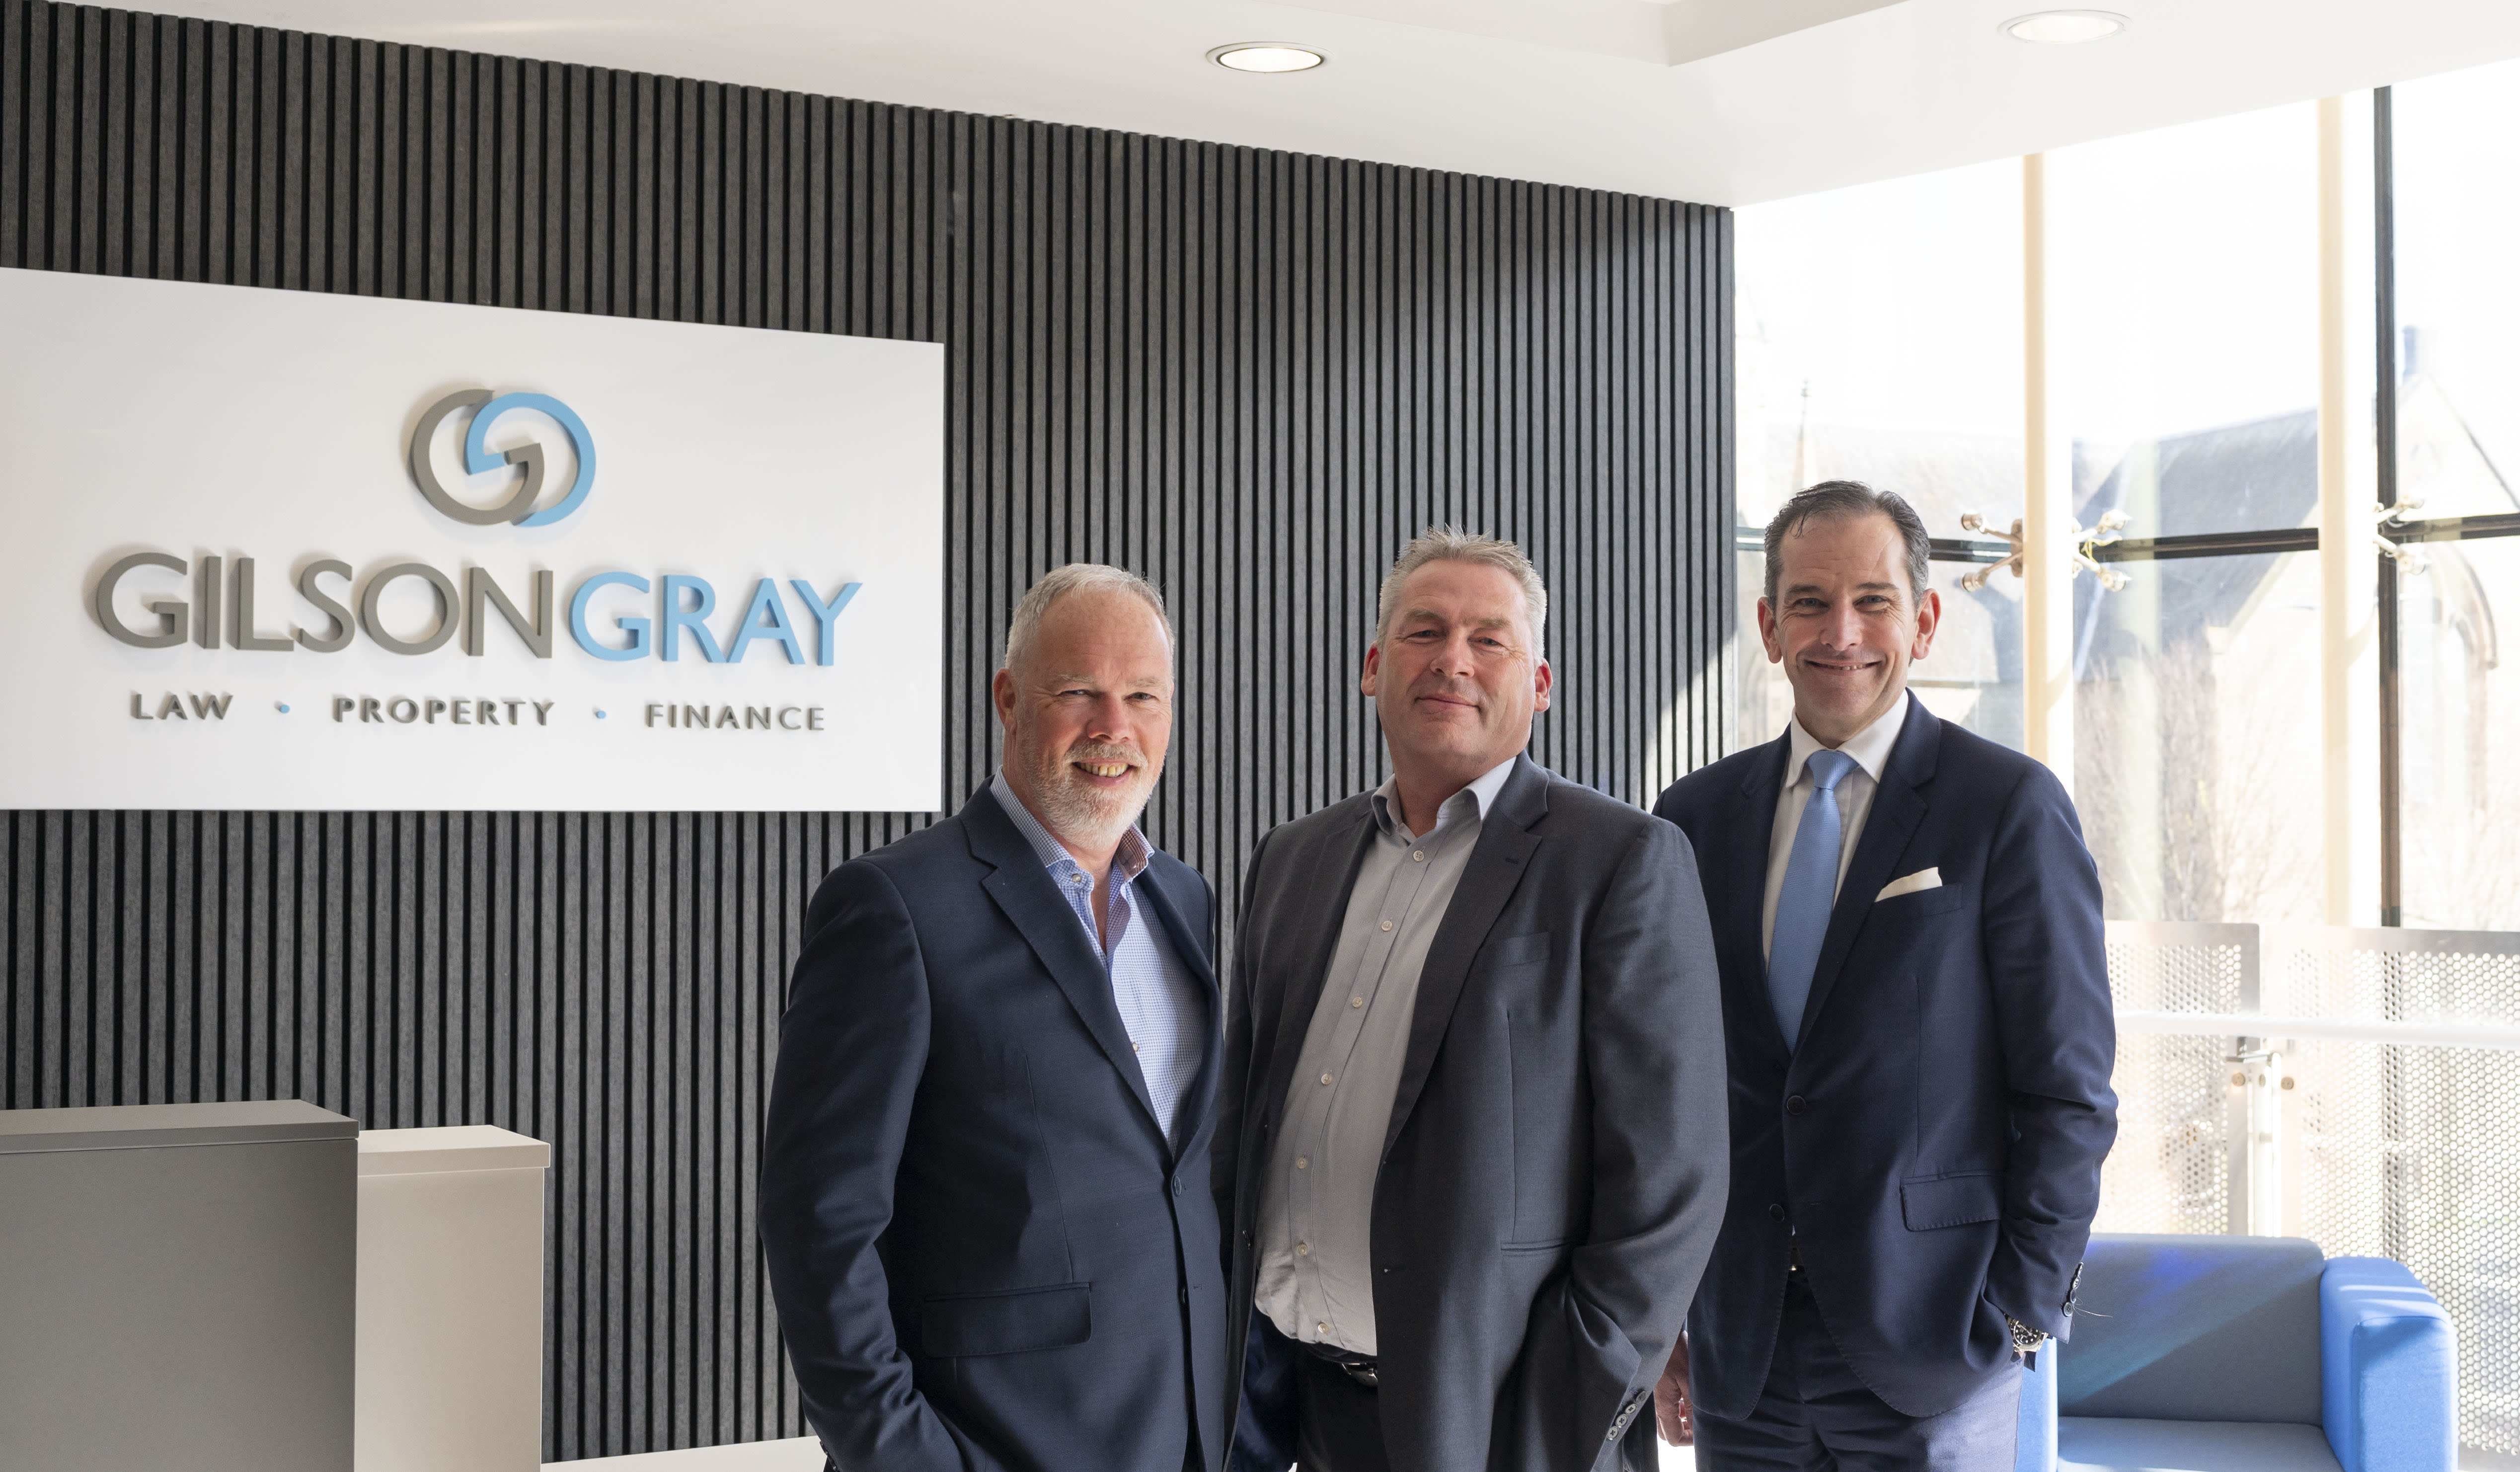 Gilson Gray Financial Management buys SJP partner firm